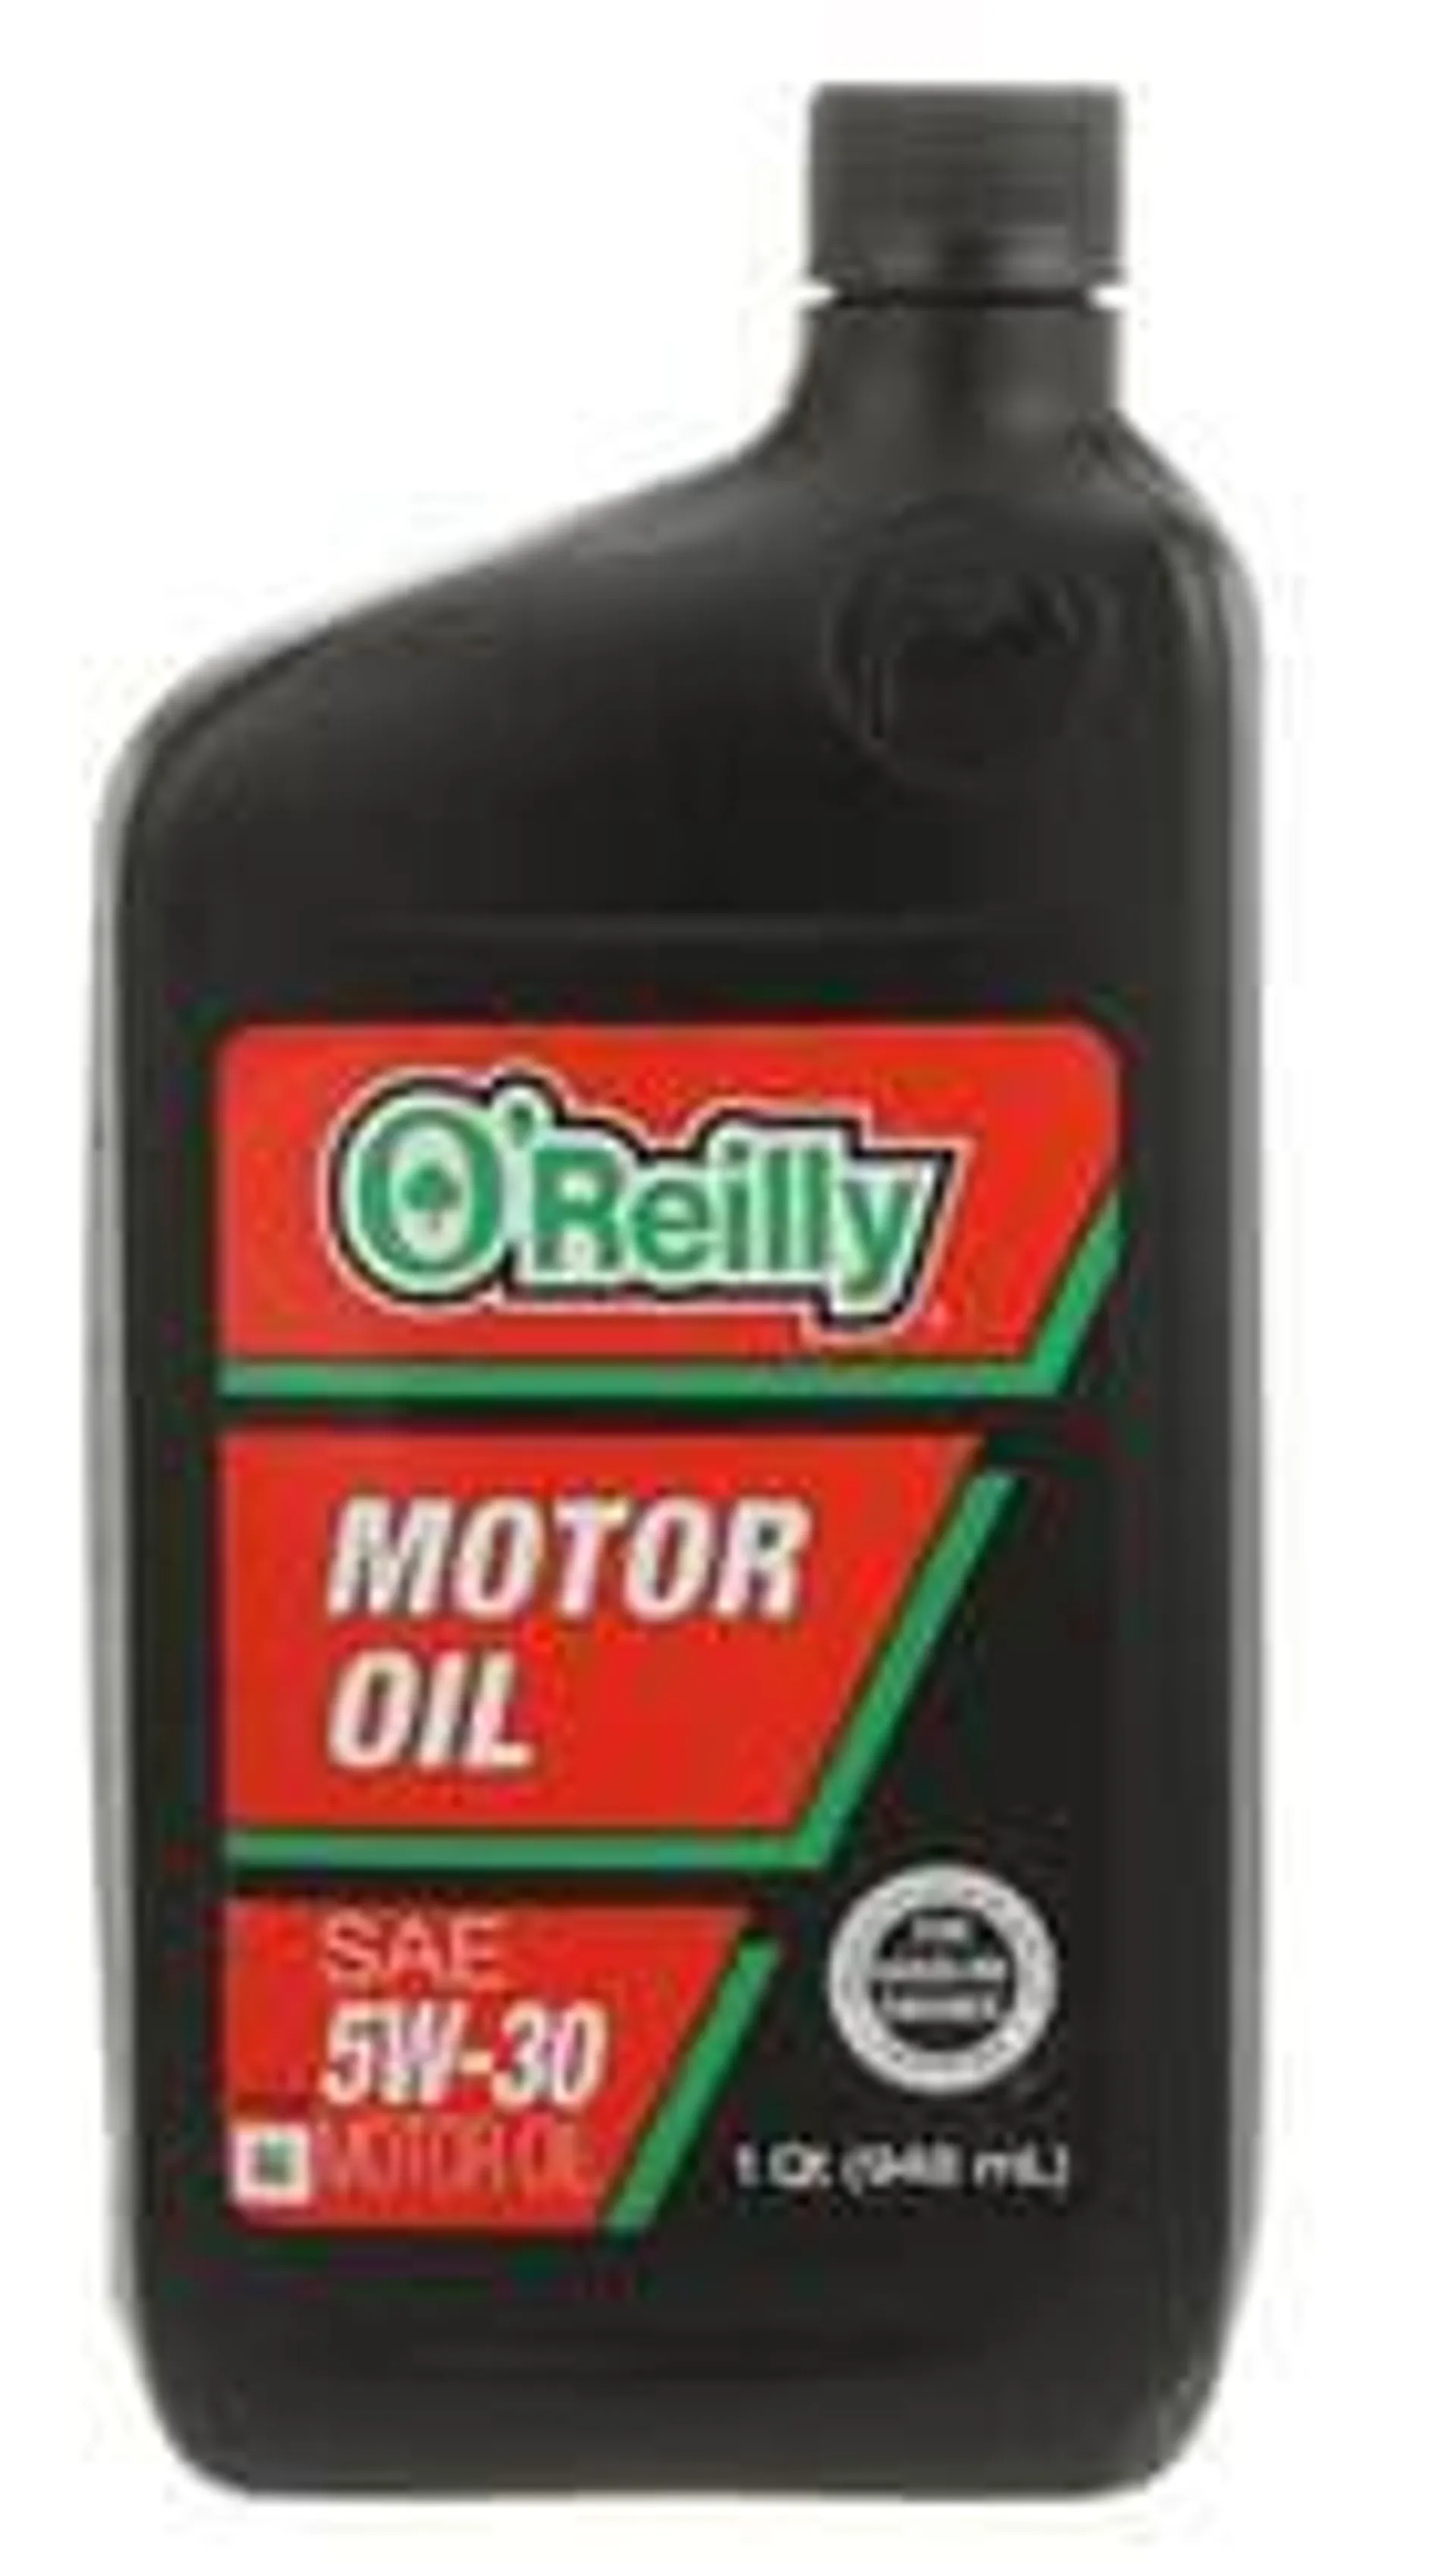 O'Reilly Conventional Motor Oil 1 Quart - 5-30